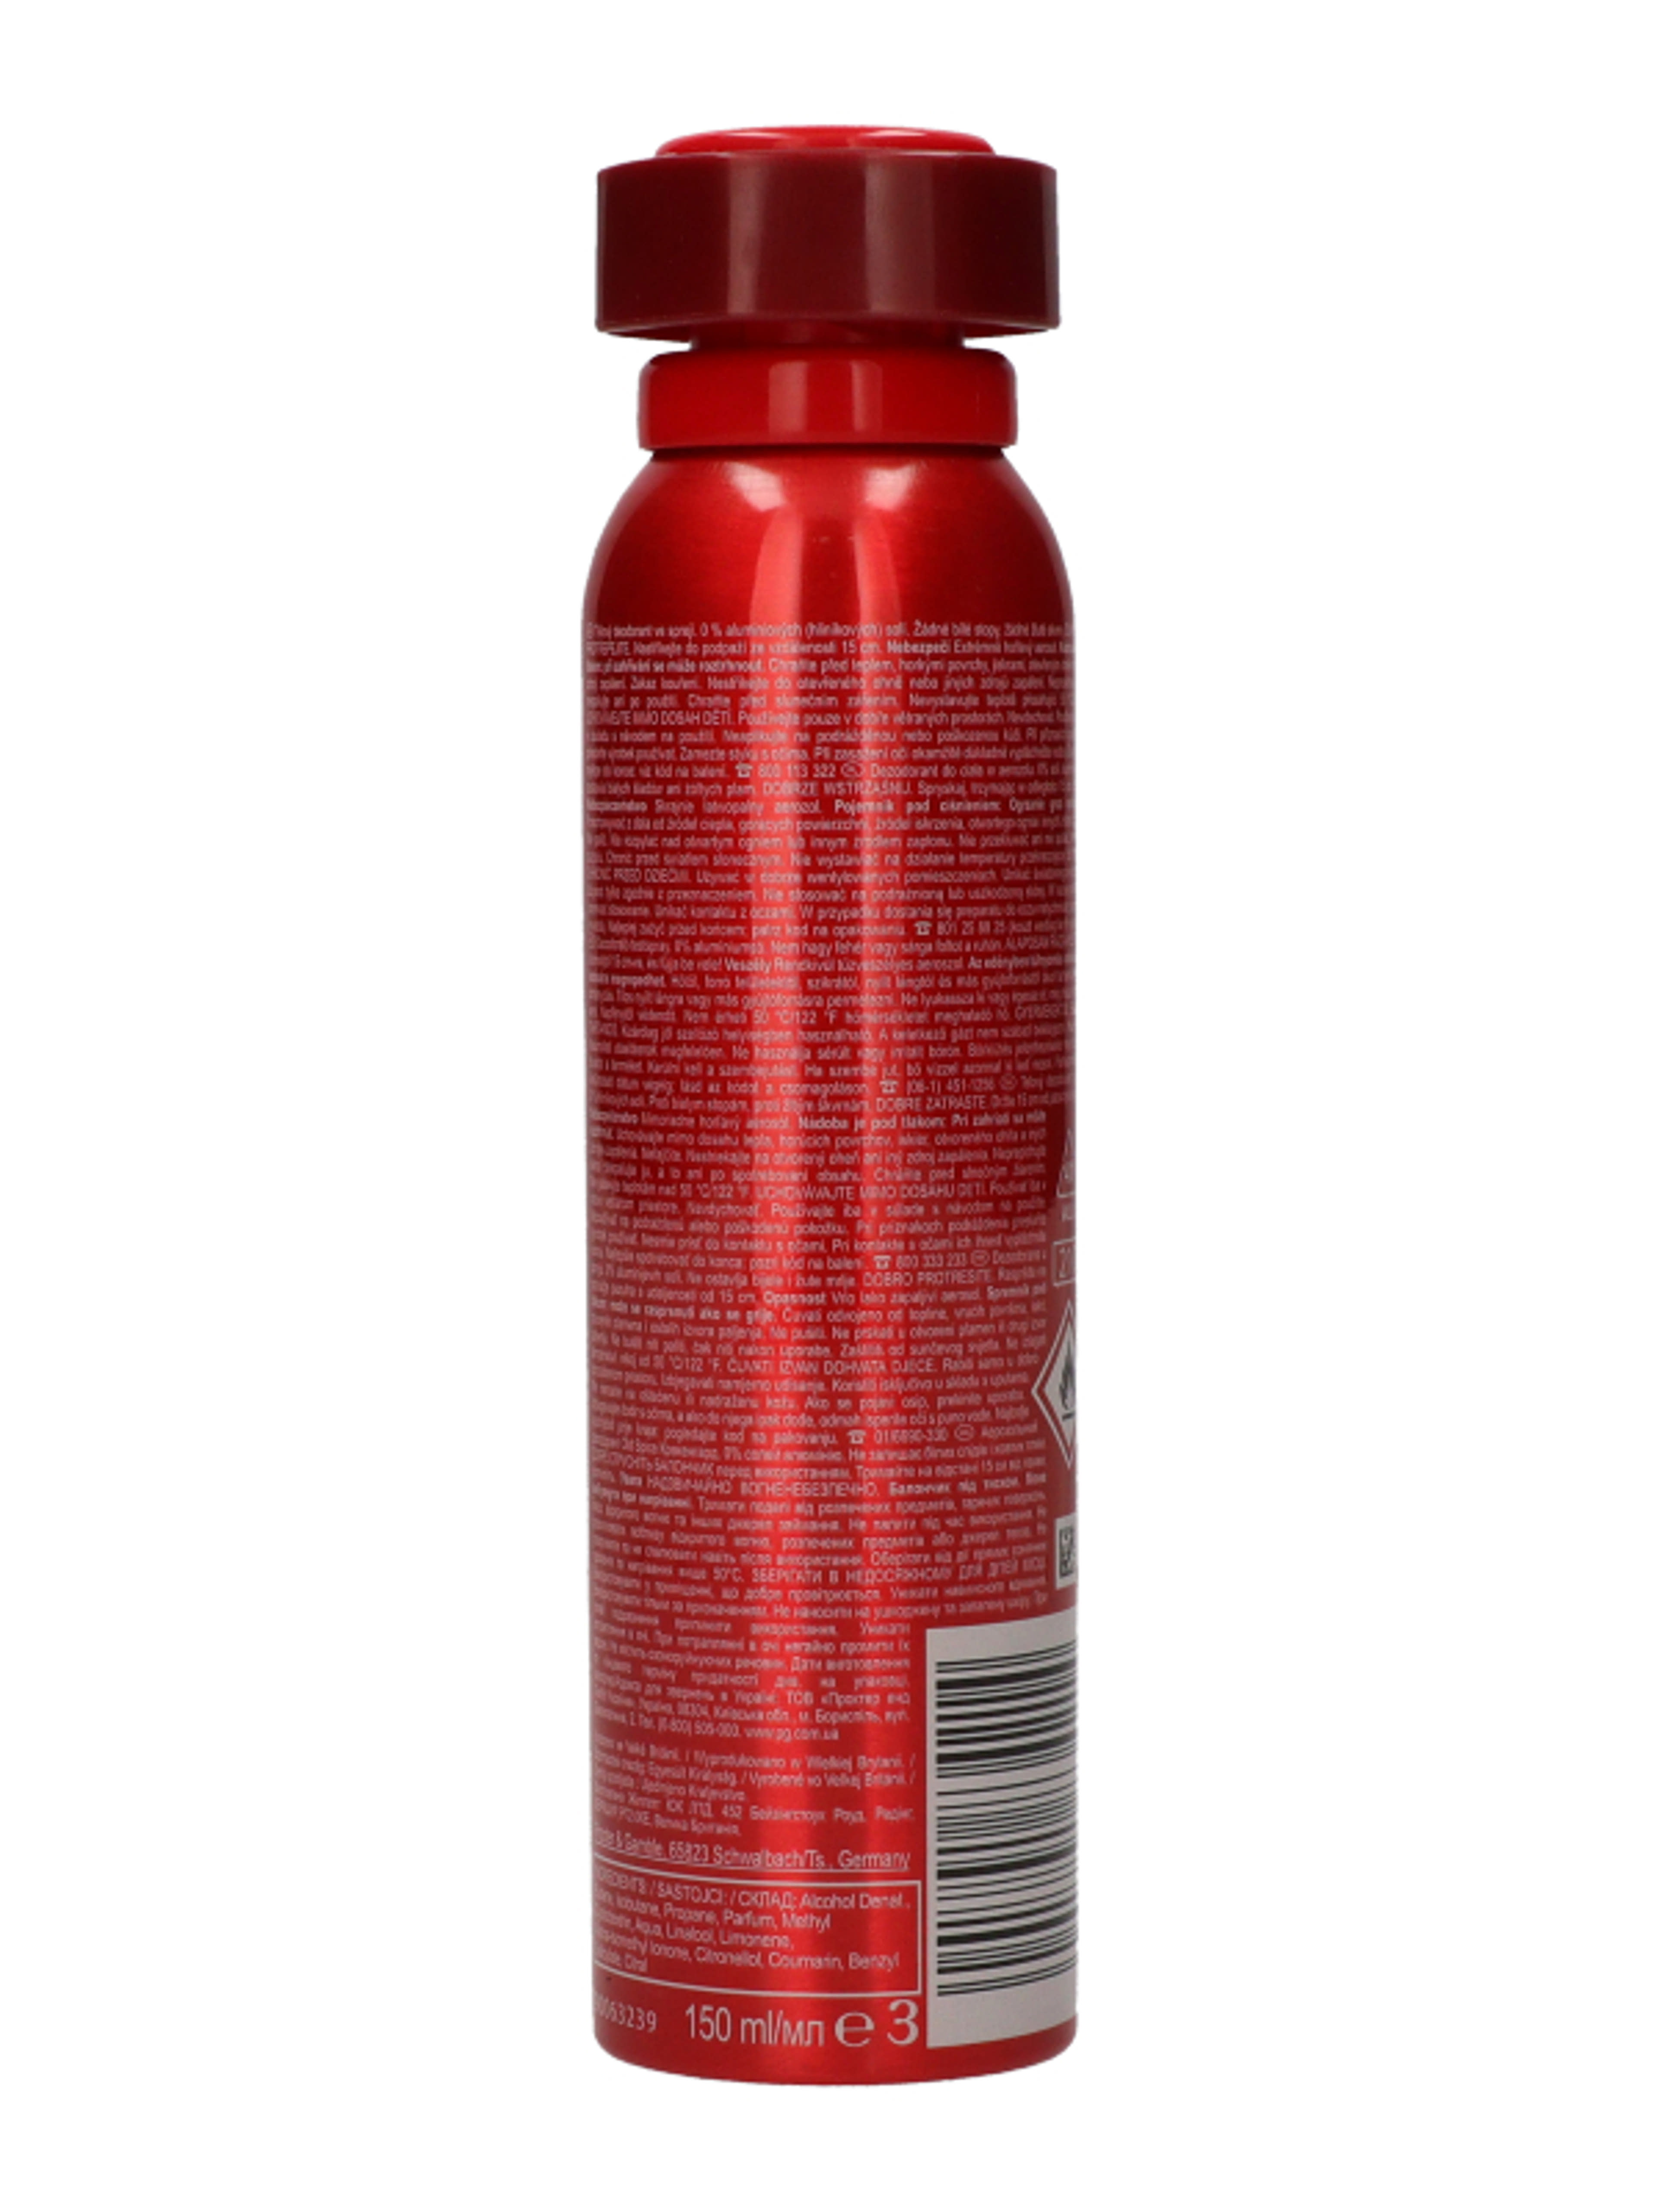 Old Spice deodorant spray krakengard férfi - 150 ml-6